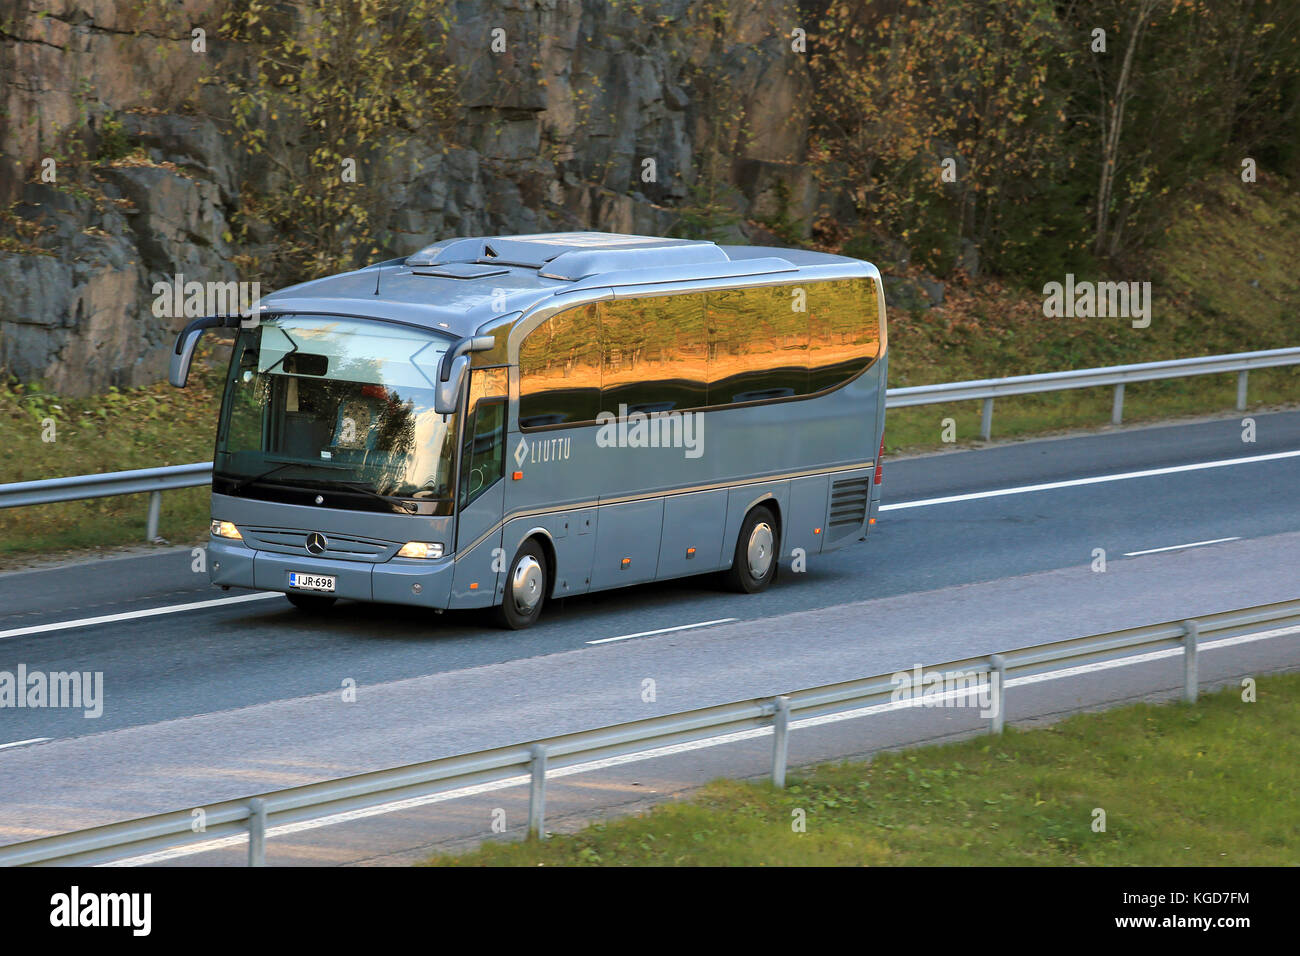 RIIHIMAKI, FINNLAND - 10. OKTOBER 2015: Grauer Mercedes-Benz-Bus auf der Autobahn. Sicherheitssysteme spielen in den Bussen und Reisebussen von Daimle eine herausragende Rolle Stockfoto